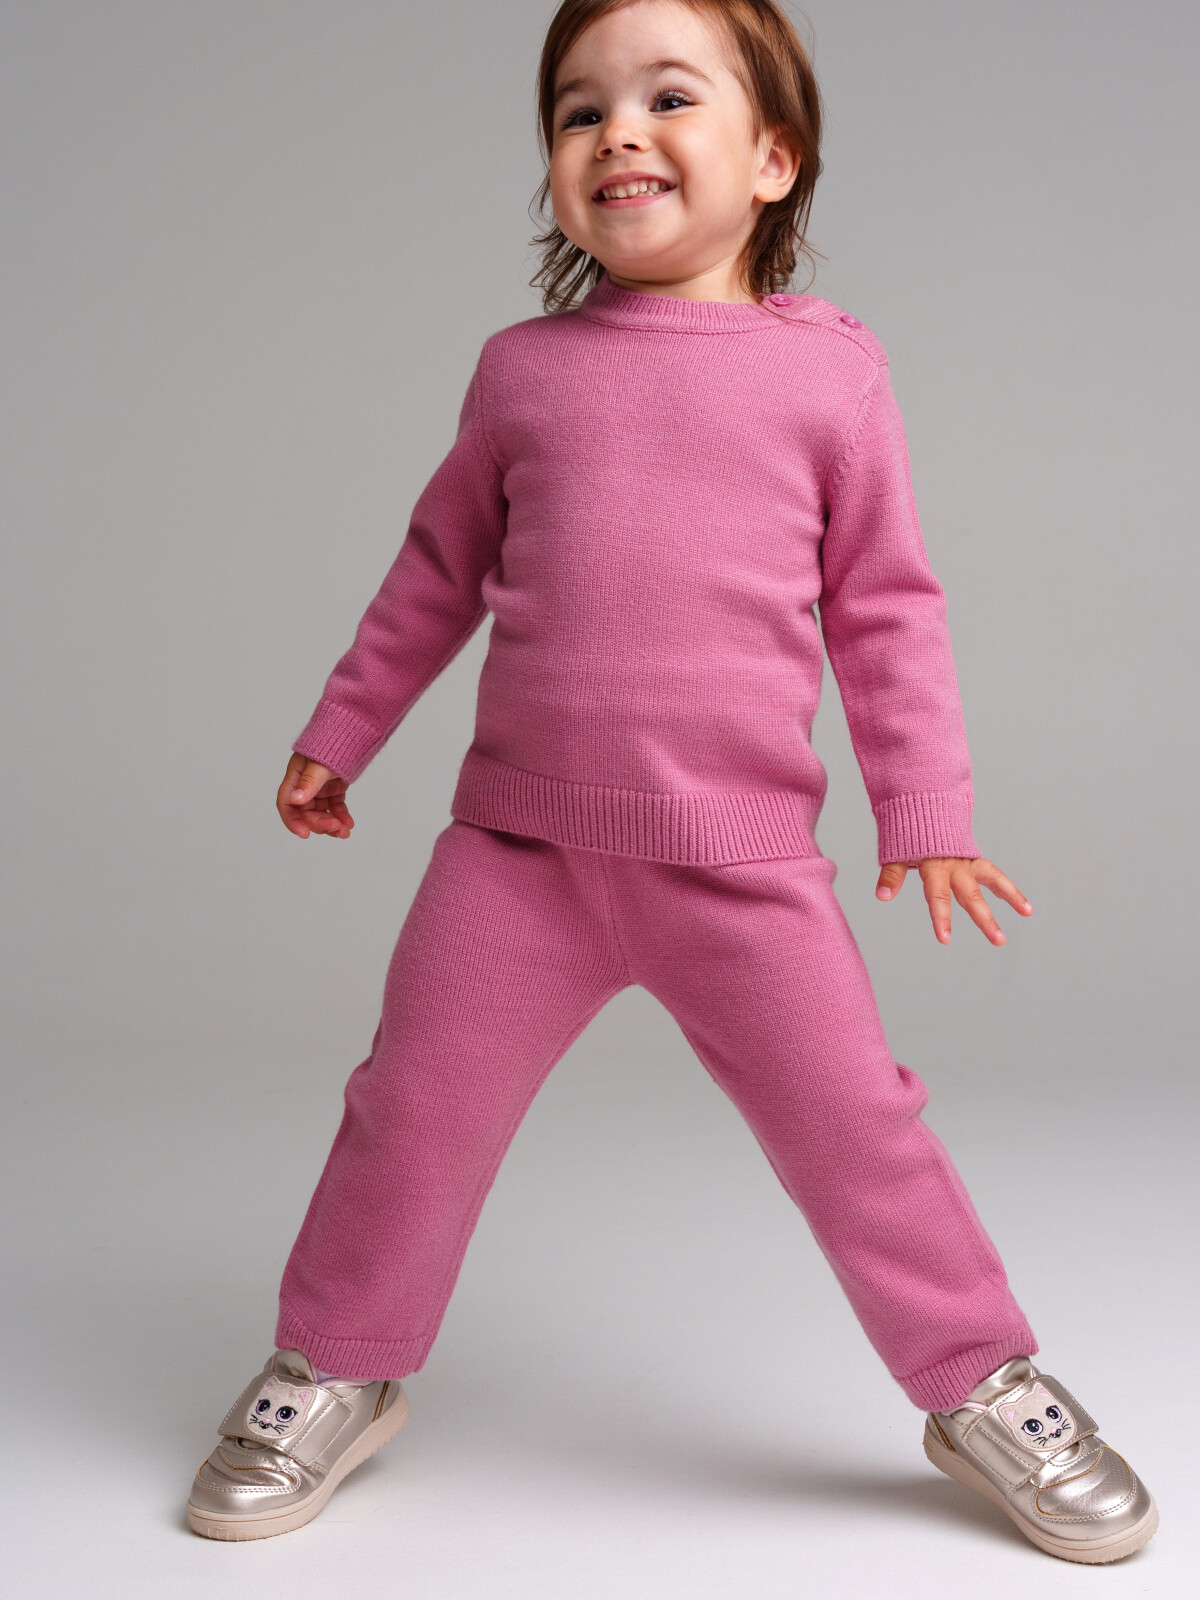 Комплект детский трикотажный: джемпер, брюки PlayToday 32329022, 92, розовый